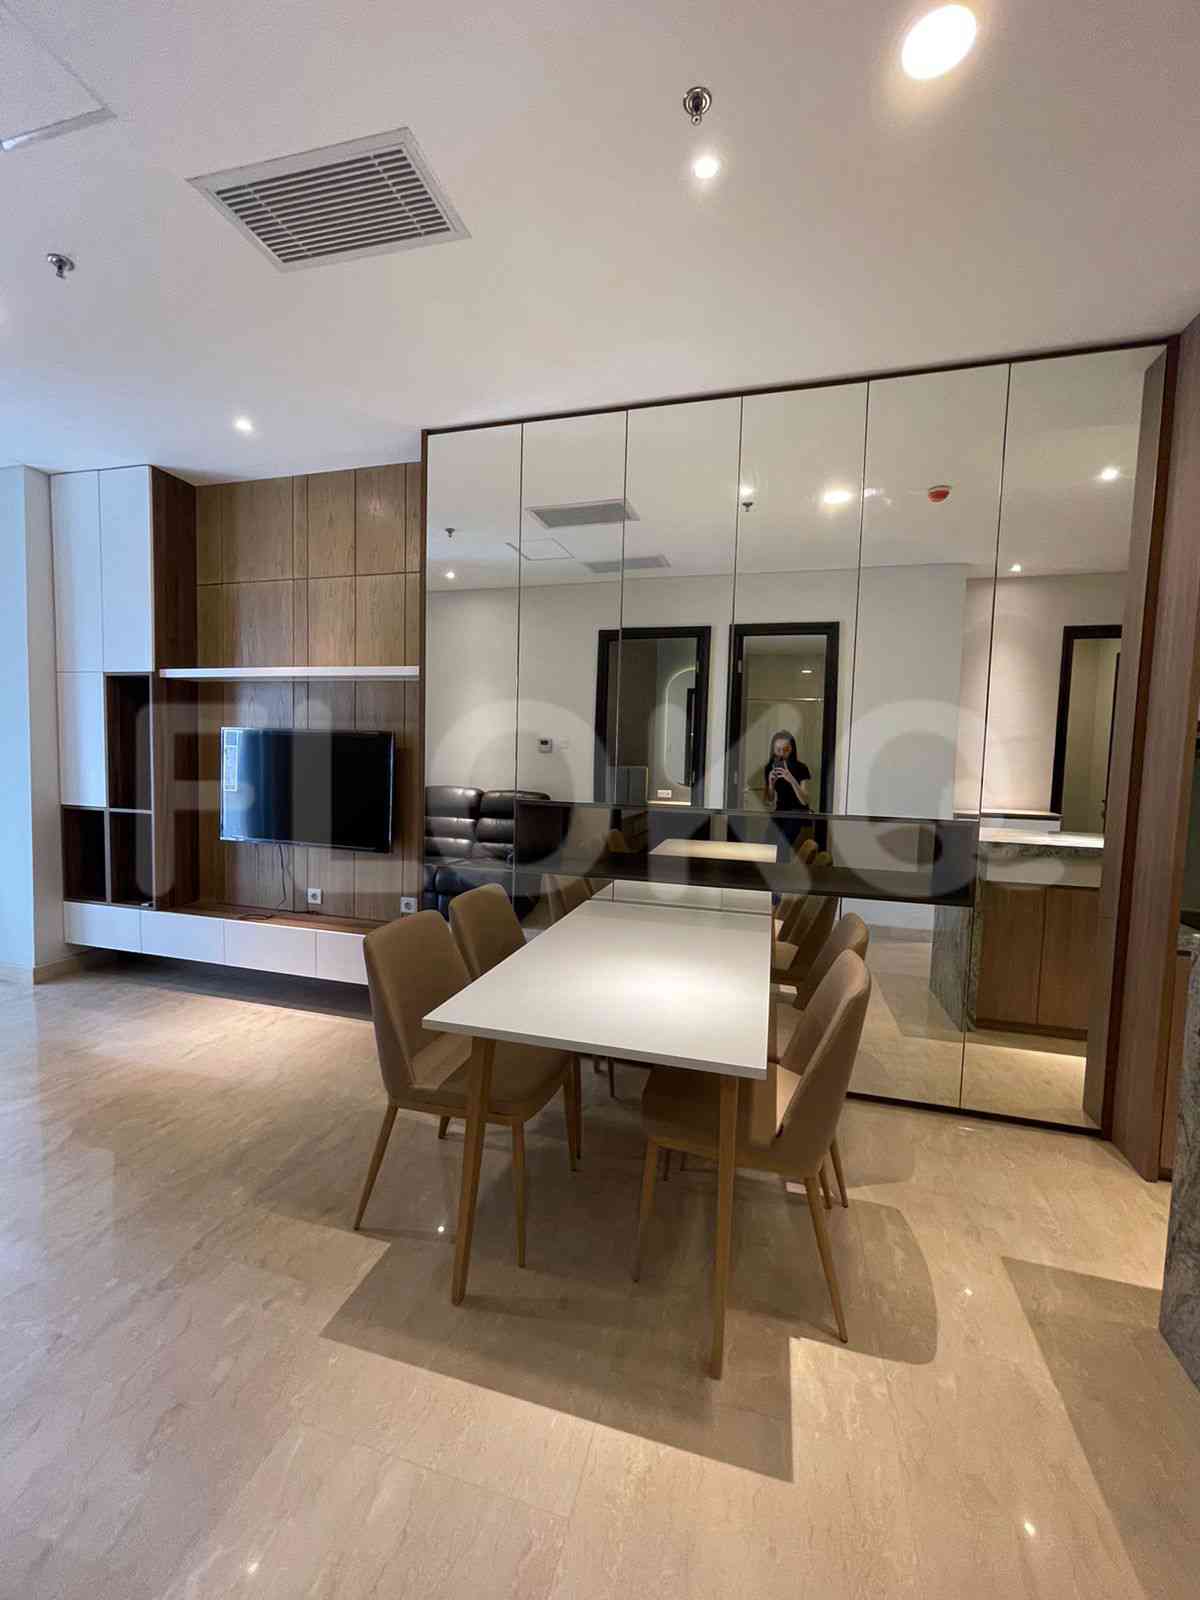 3 Bedroom on 10th Floor for Rent in Sudirman Suites Jakarta - fsuaf7 9